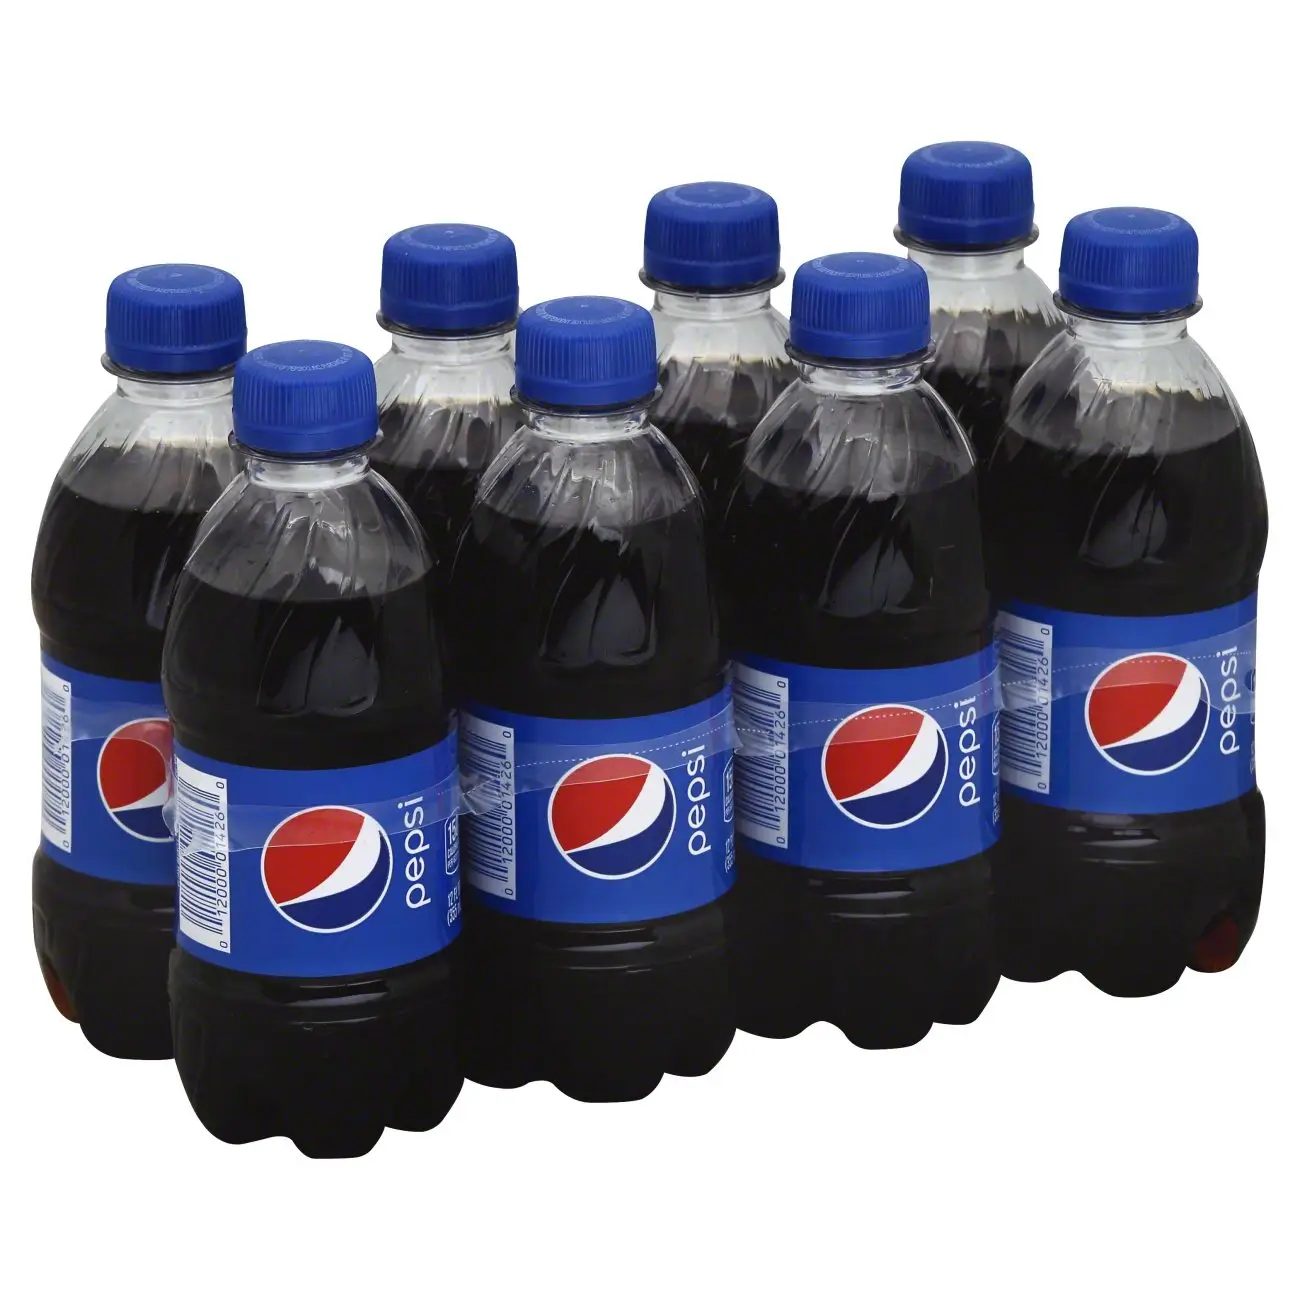 Chúng tôi cung cấp ban đầu France Pepsi Soda uống và cũng cung cấp Fanta, 7Up, Cocacola 330 ml lon, Dr peppe nước giải khát để bán